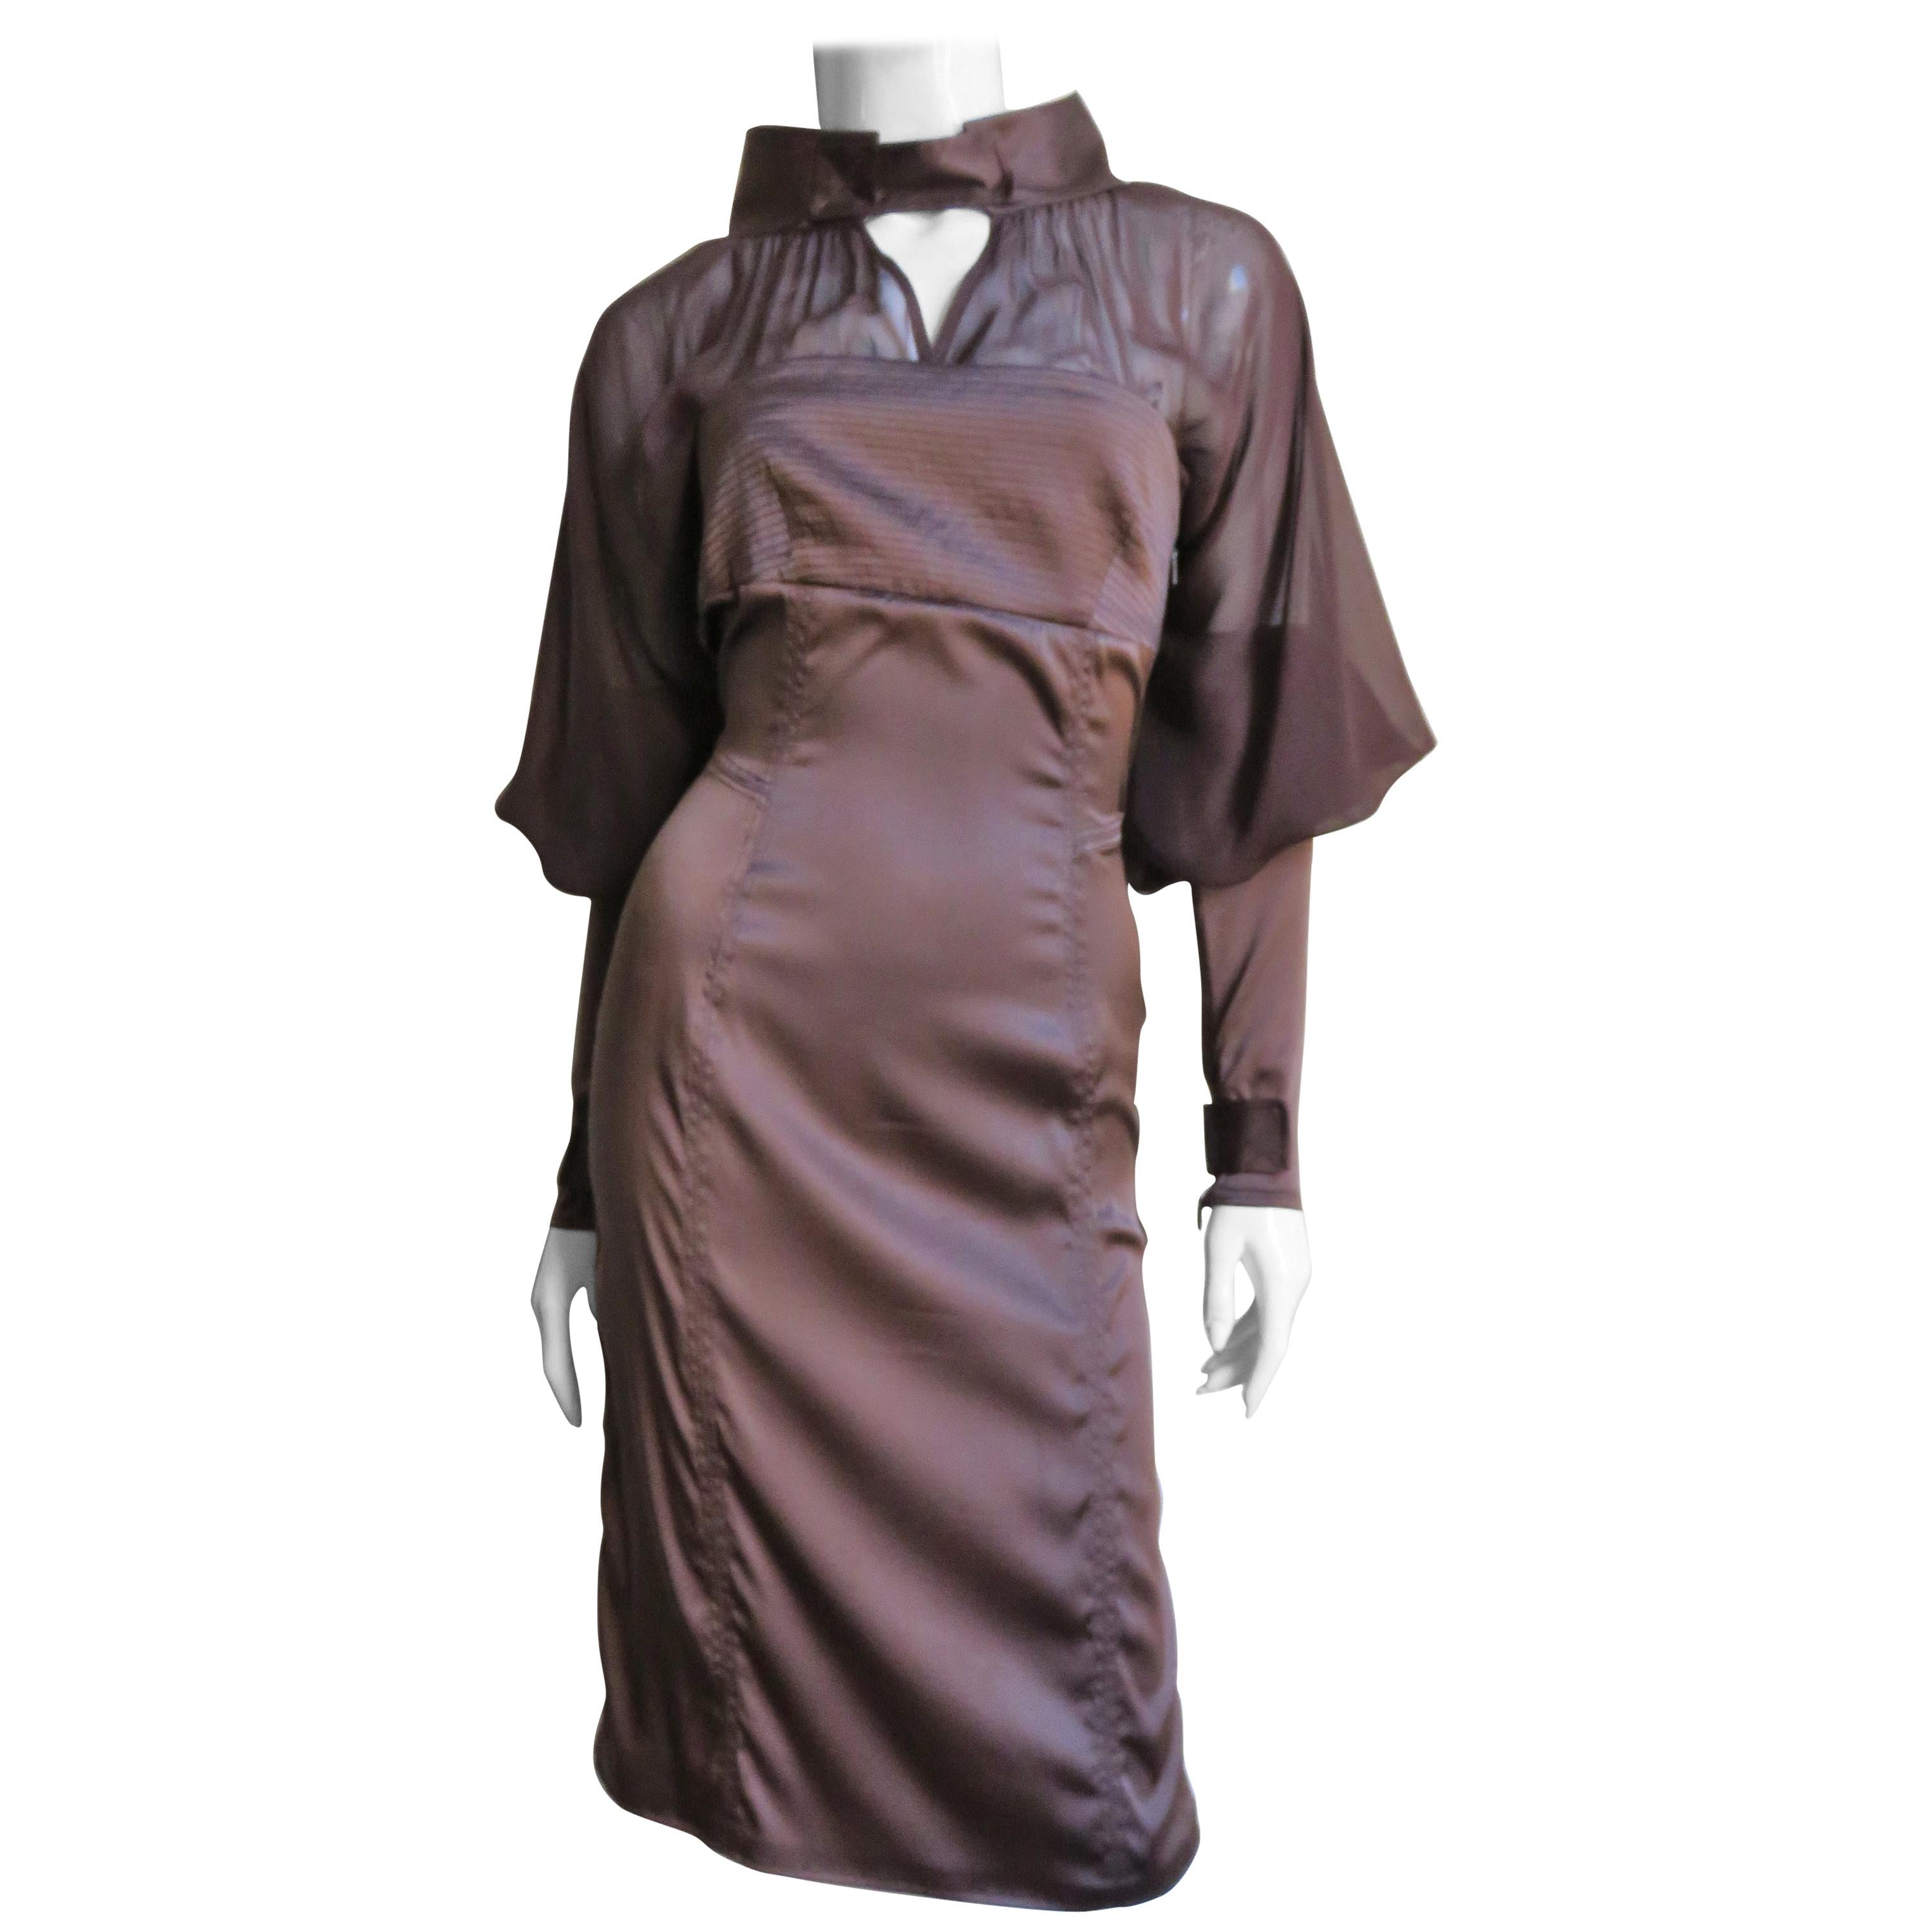 Une magnifique robe en soie stretch fine de couleur marron riche, signée Tom Ford pour Gucci. La partie de la robe est sans bretelles puis elle est transparente jusqu'au col montant du cou et aux coudes de la jambe de mouton dramatique où les